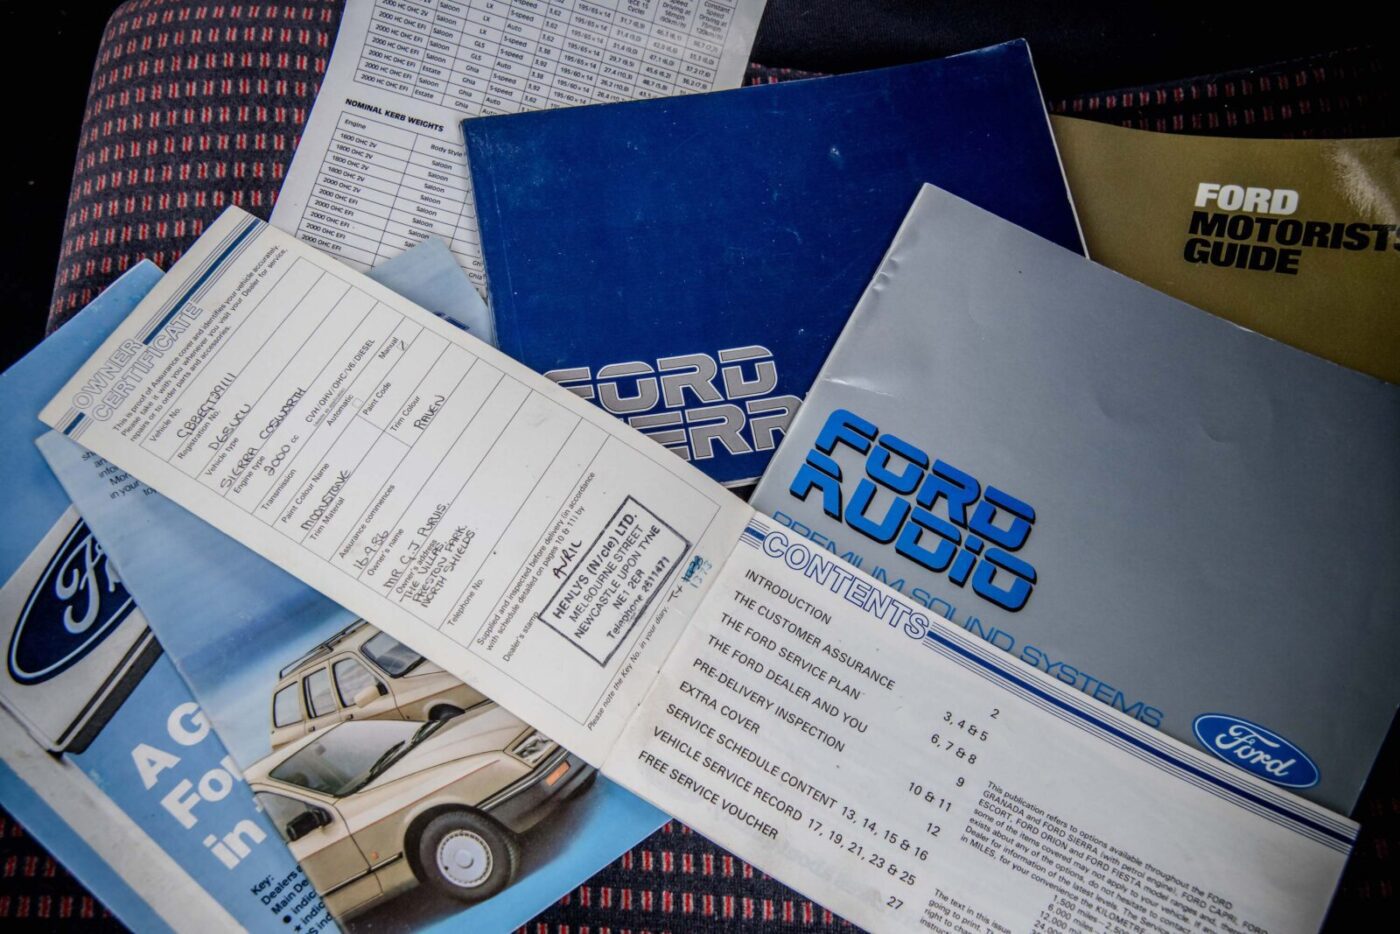 Ford Sierra Cosworth handbook